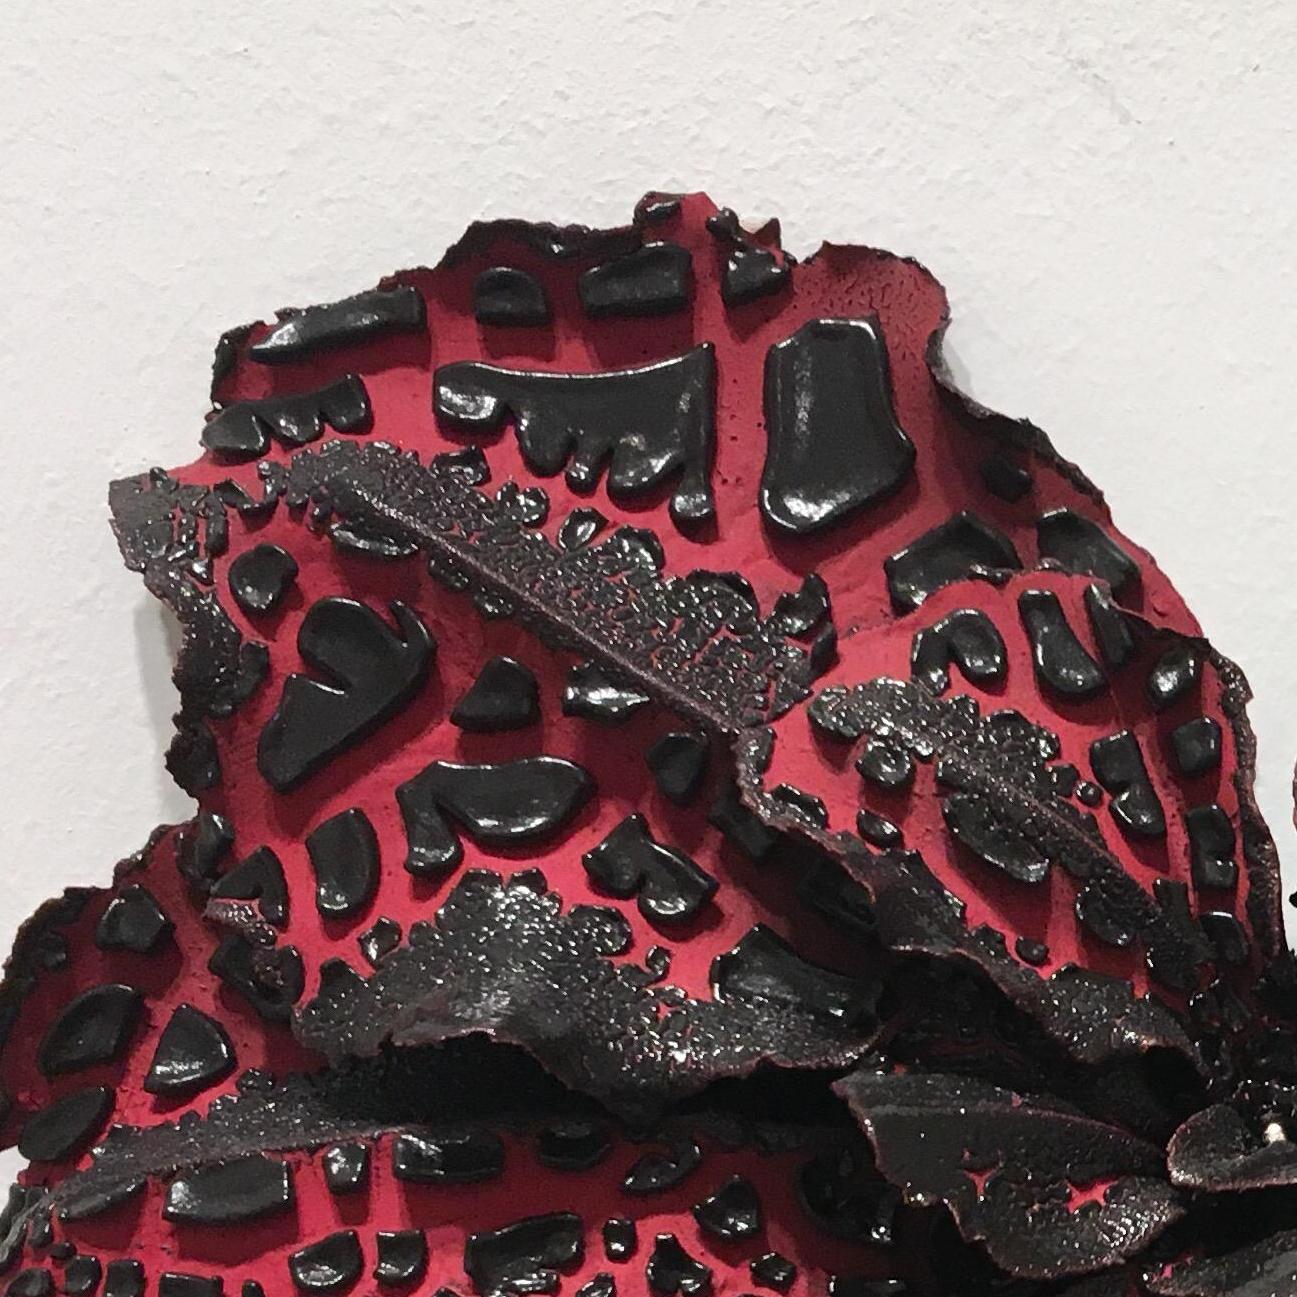 Christopher Adams, Untitled, Biomorphic ceramic sculpture, 2016 1